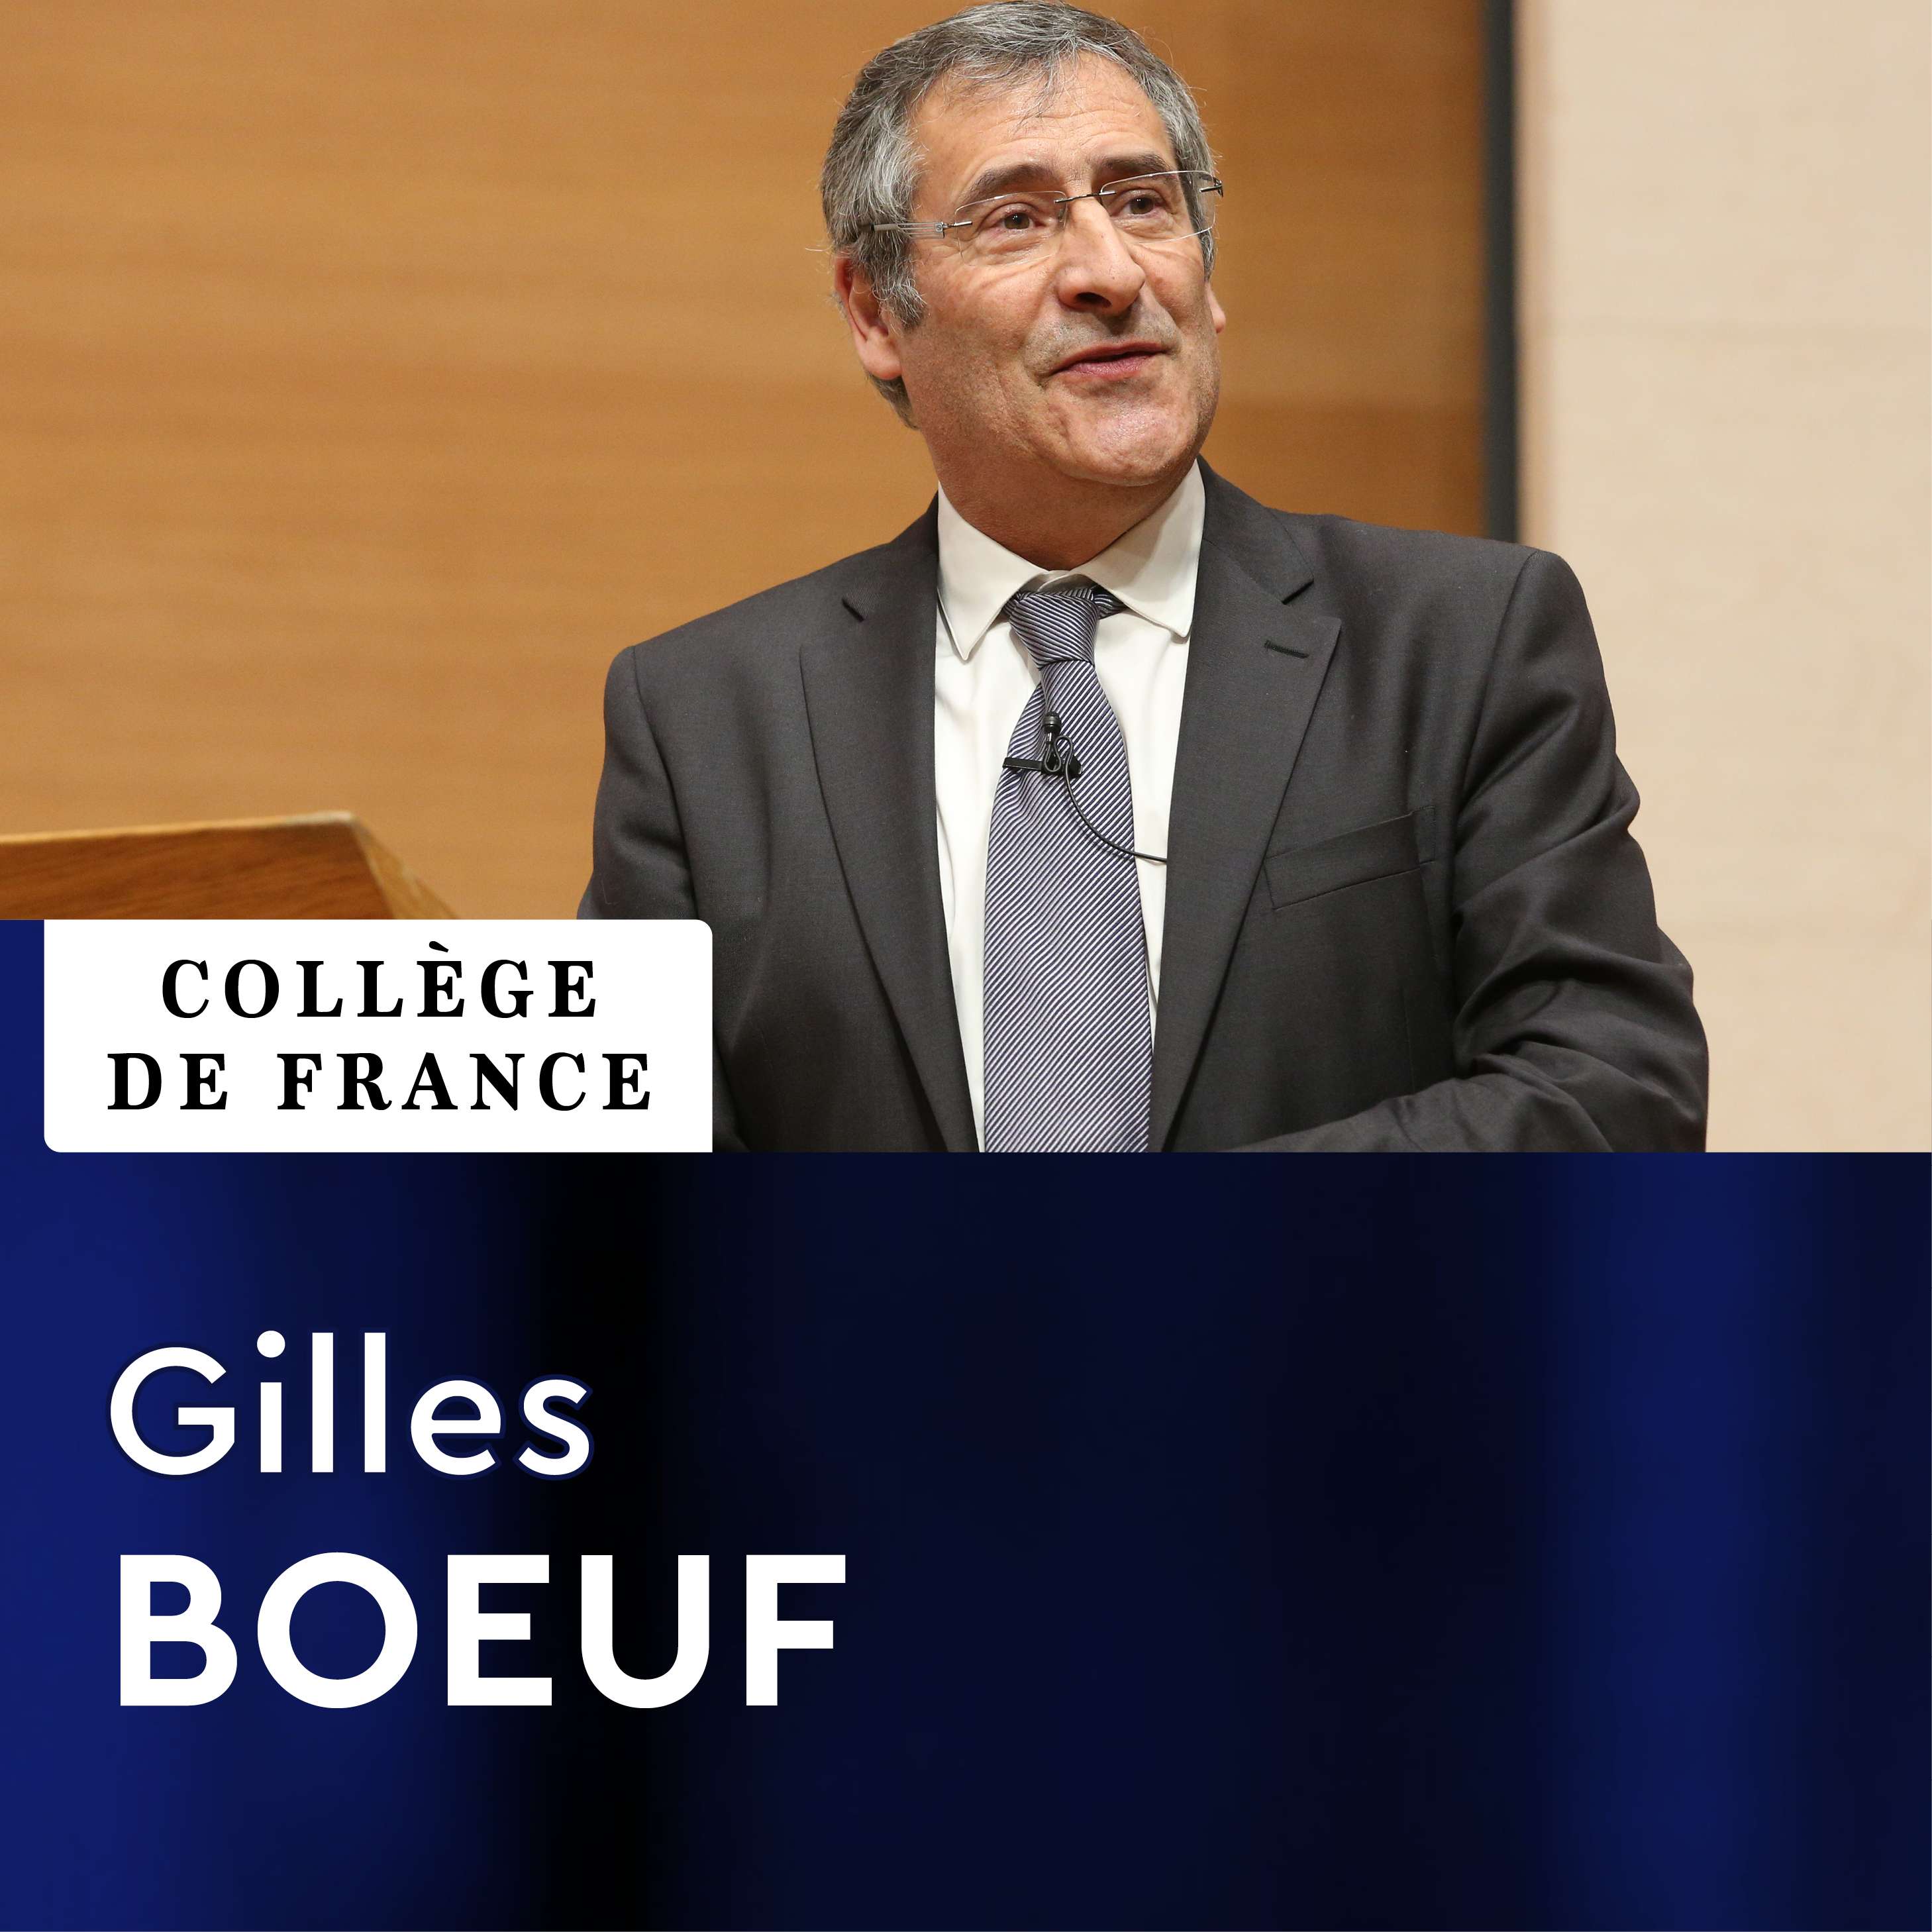 Développement durable - Environnement, Energie et Société - Gilles Boeuf